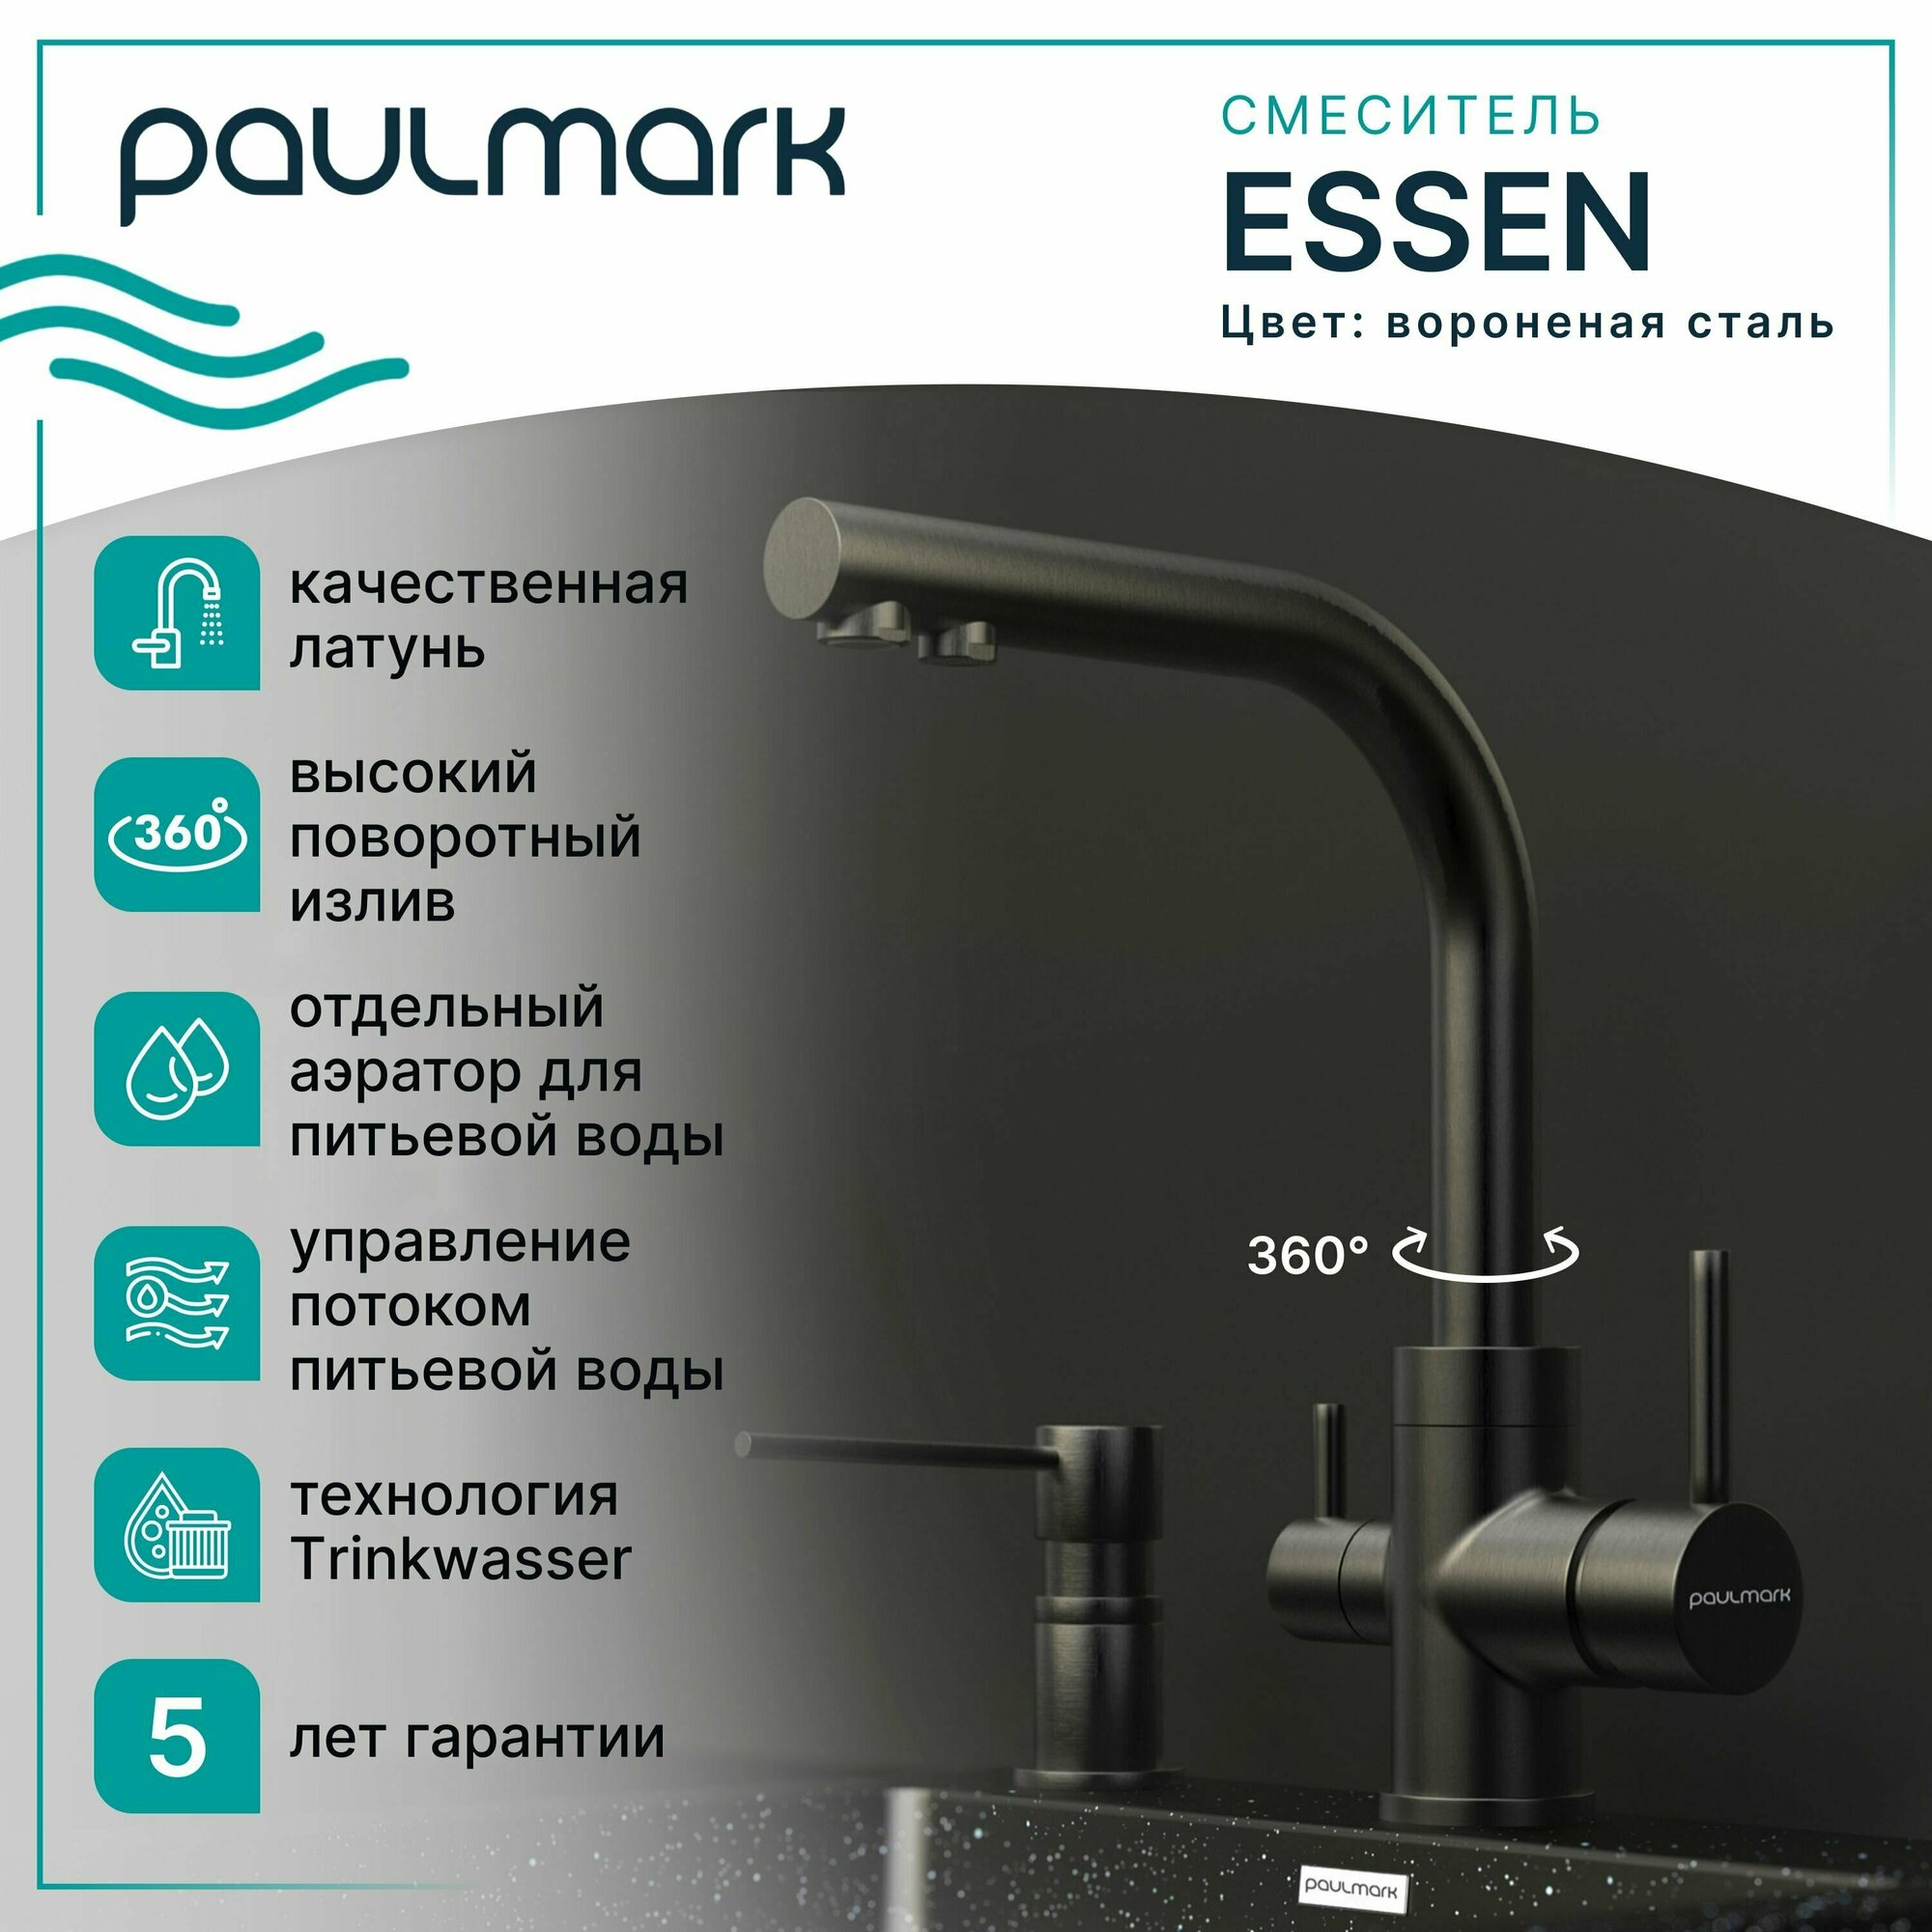 Смеситель для кухни Paulmark ESSEN, подключение к фильтру питьевой воды с отдельным каналом и выпуском, высокий поворотный излив, латунь, на мойку / столешницу, вороненая сталь, Es213011-GM